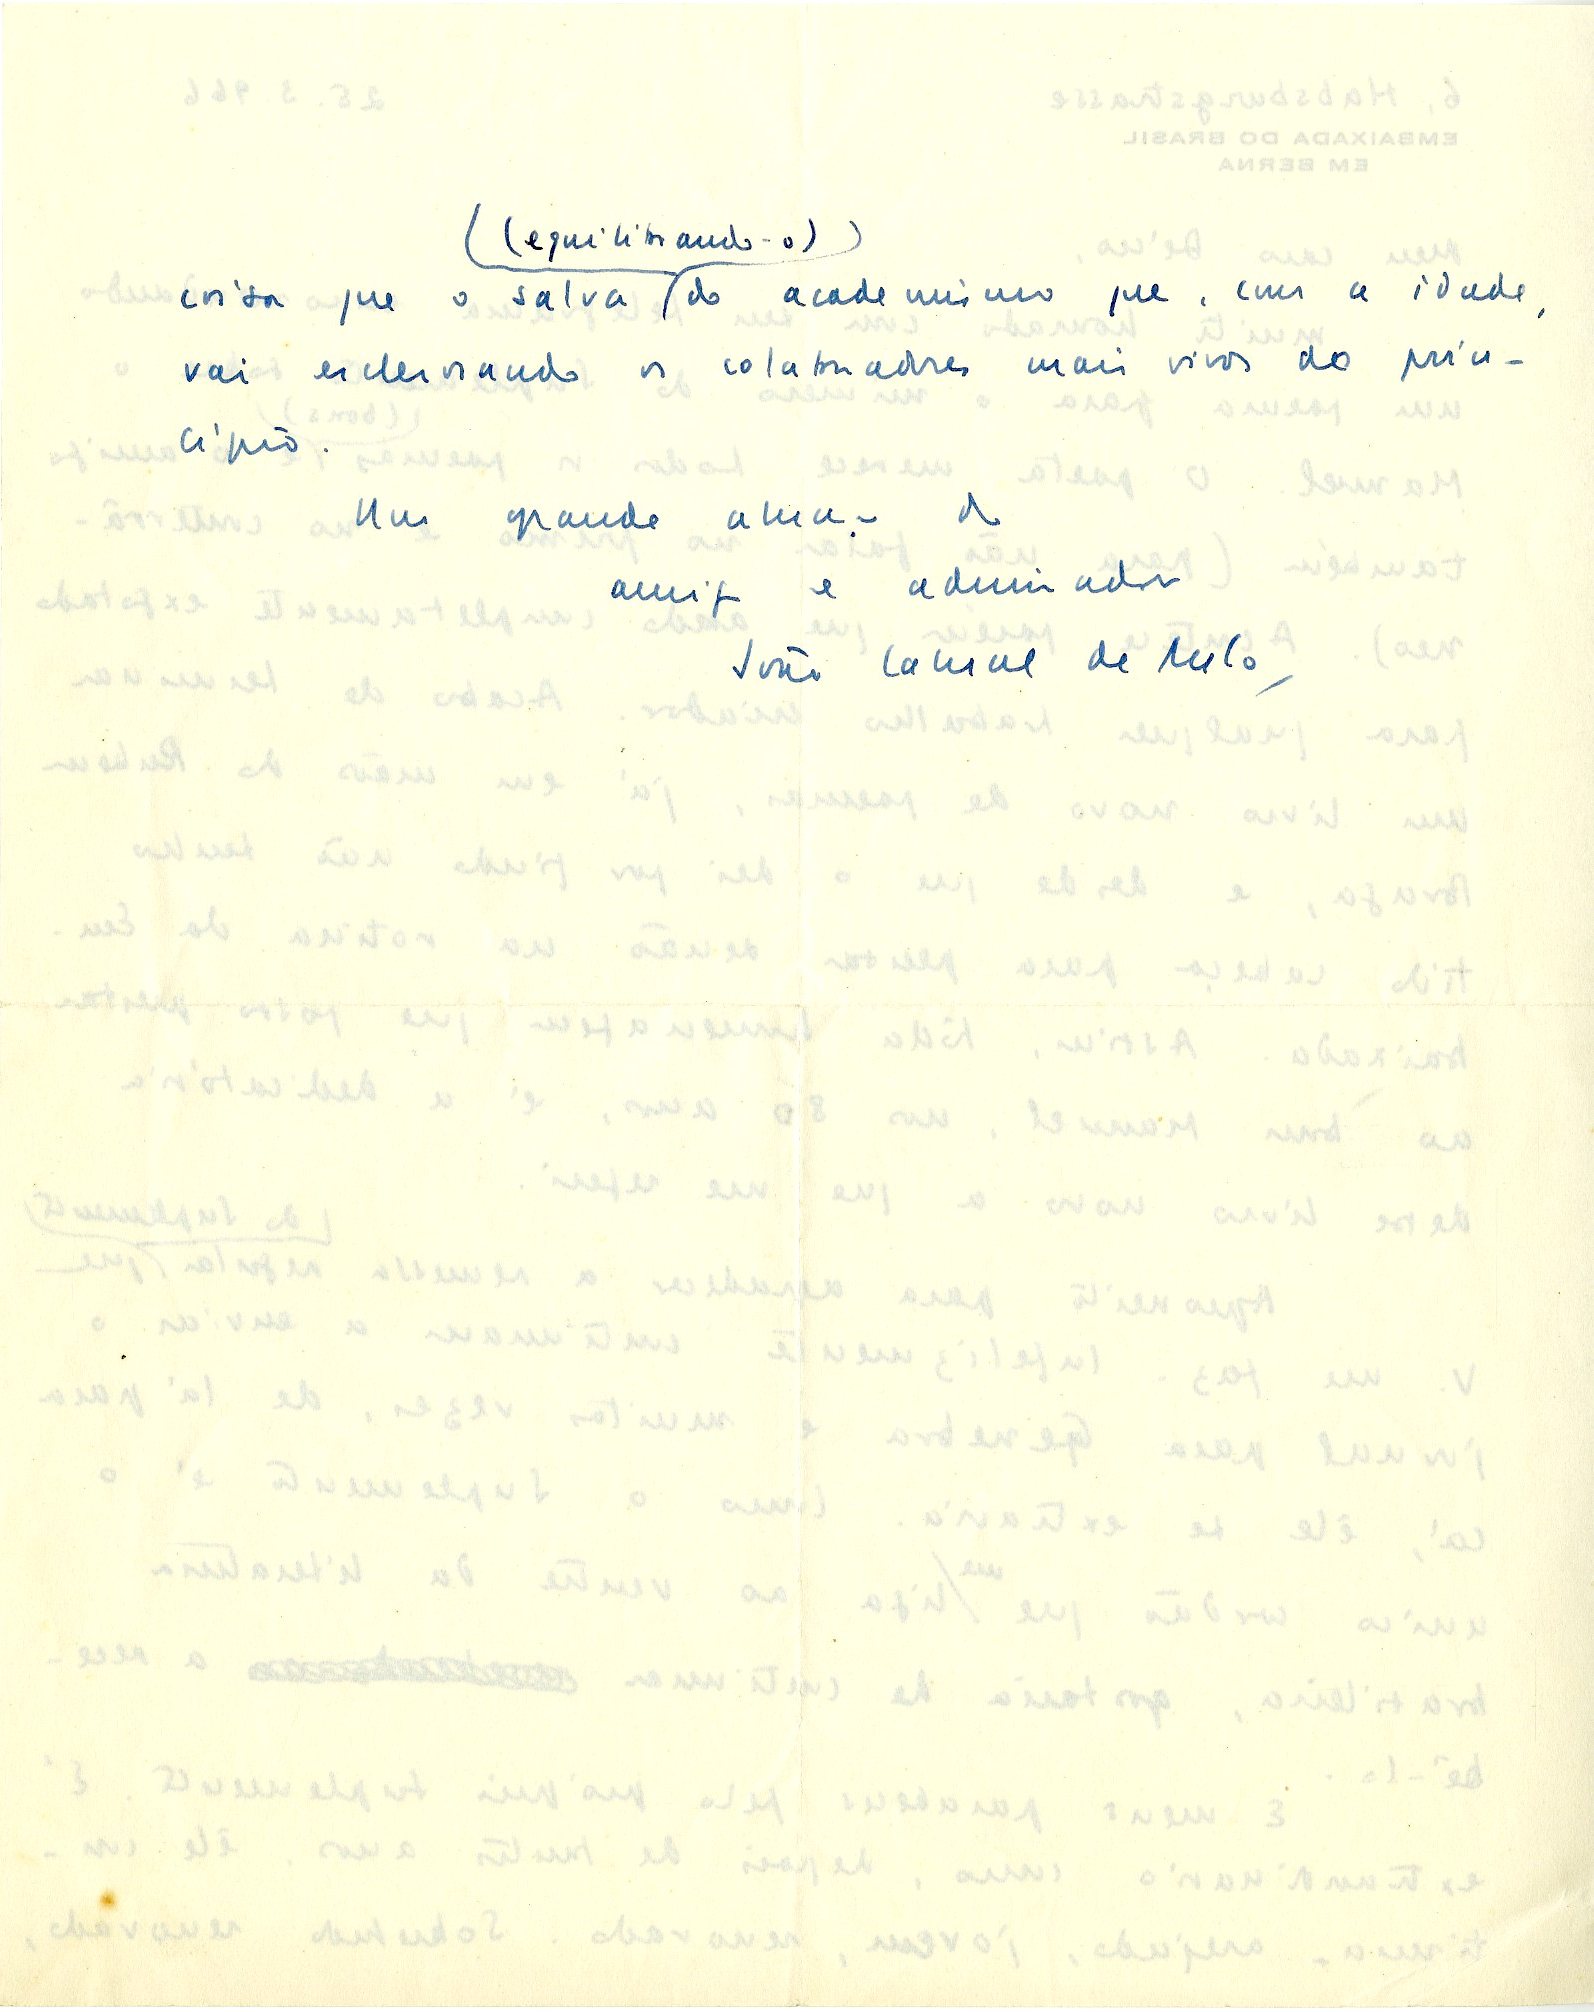 Carta de João Cabral de Melo Neto, 23 de março de 1988. Arquivo Decio de Almeida Prado/ Acervo IMS.